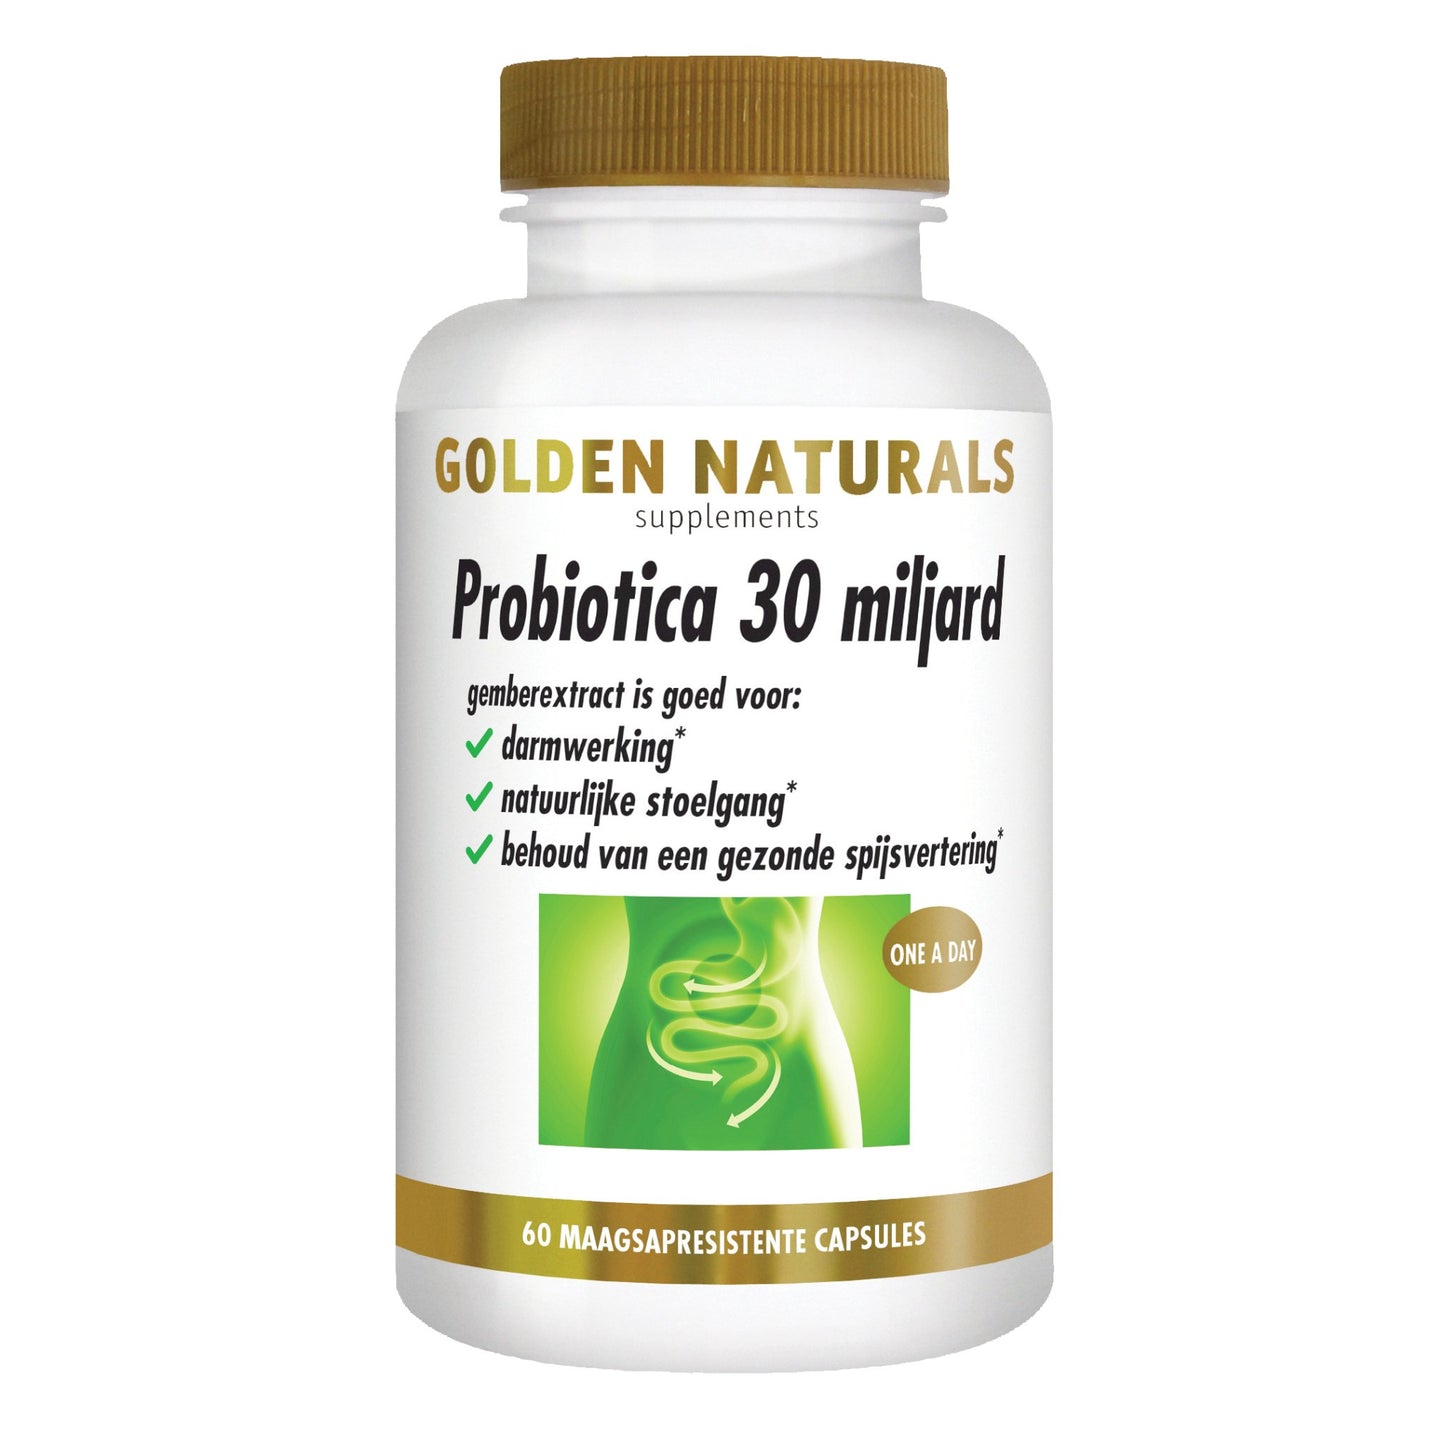 Probiotica 30 miljard - 60 - veganistische maagsapresistente capsules Supplement Golden Naturals   